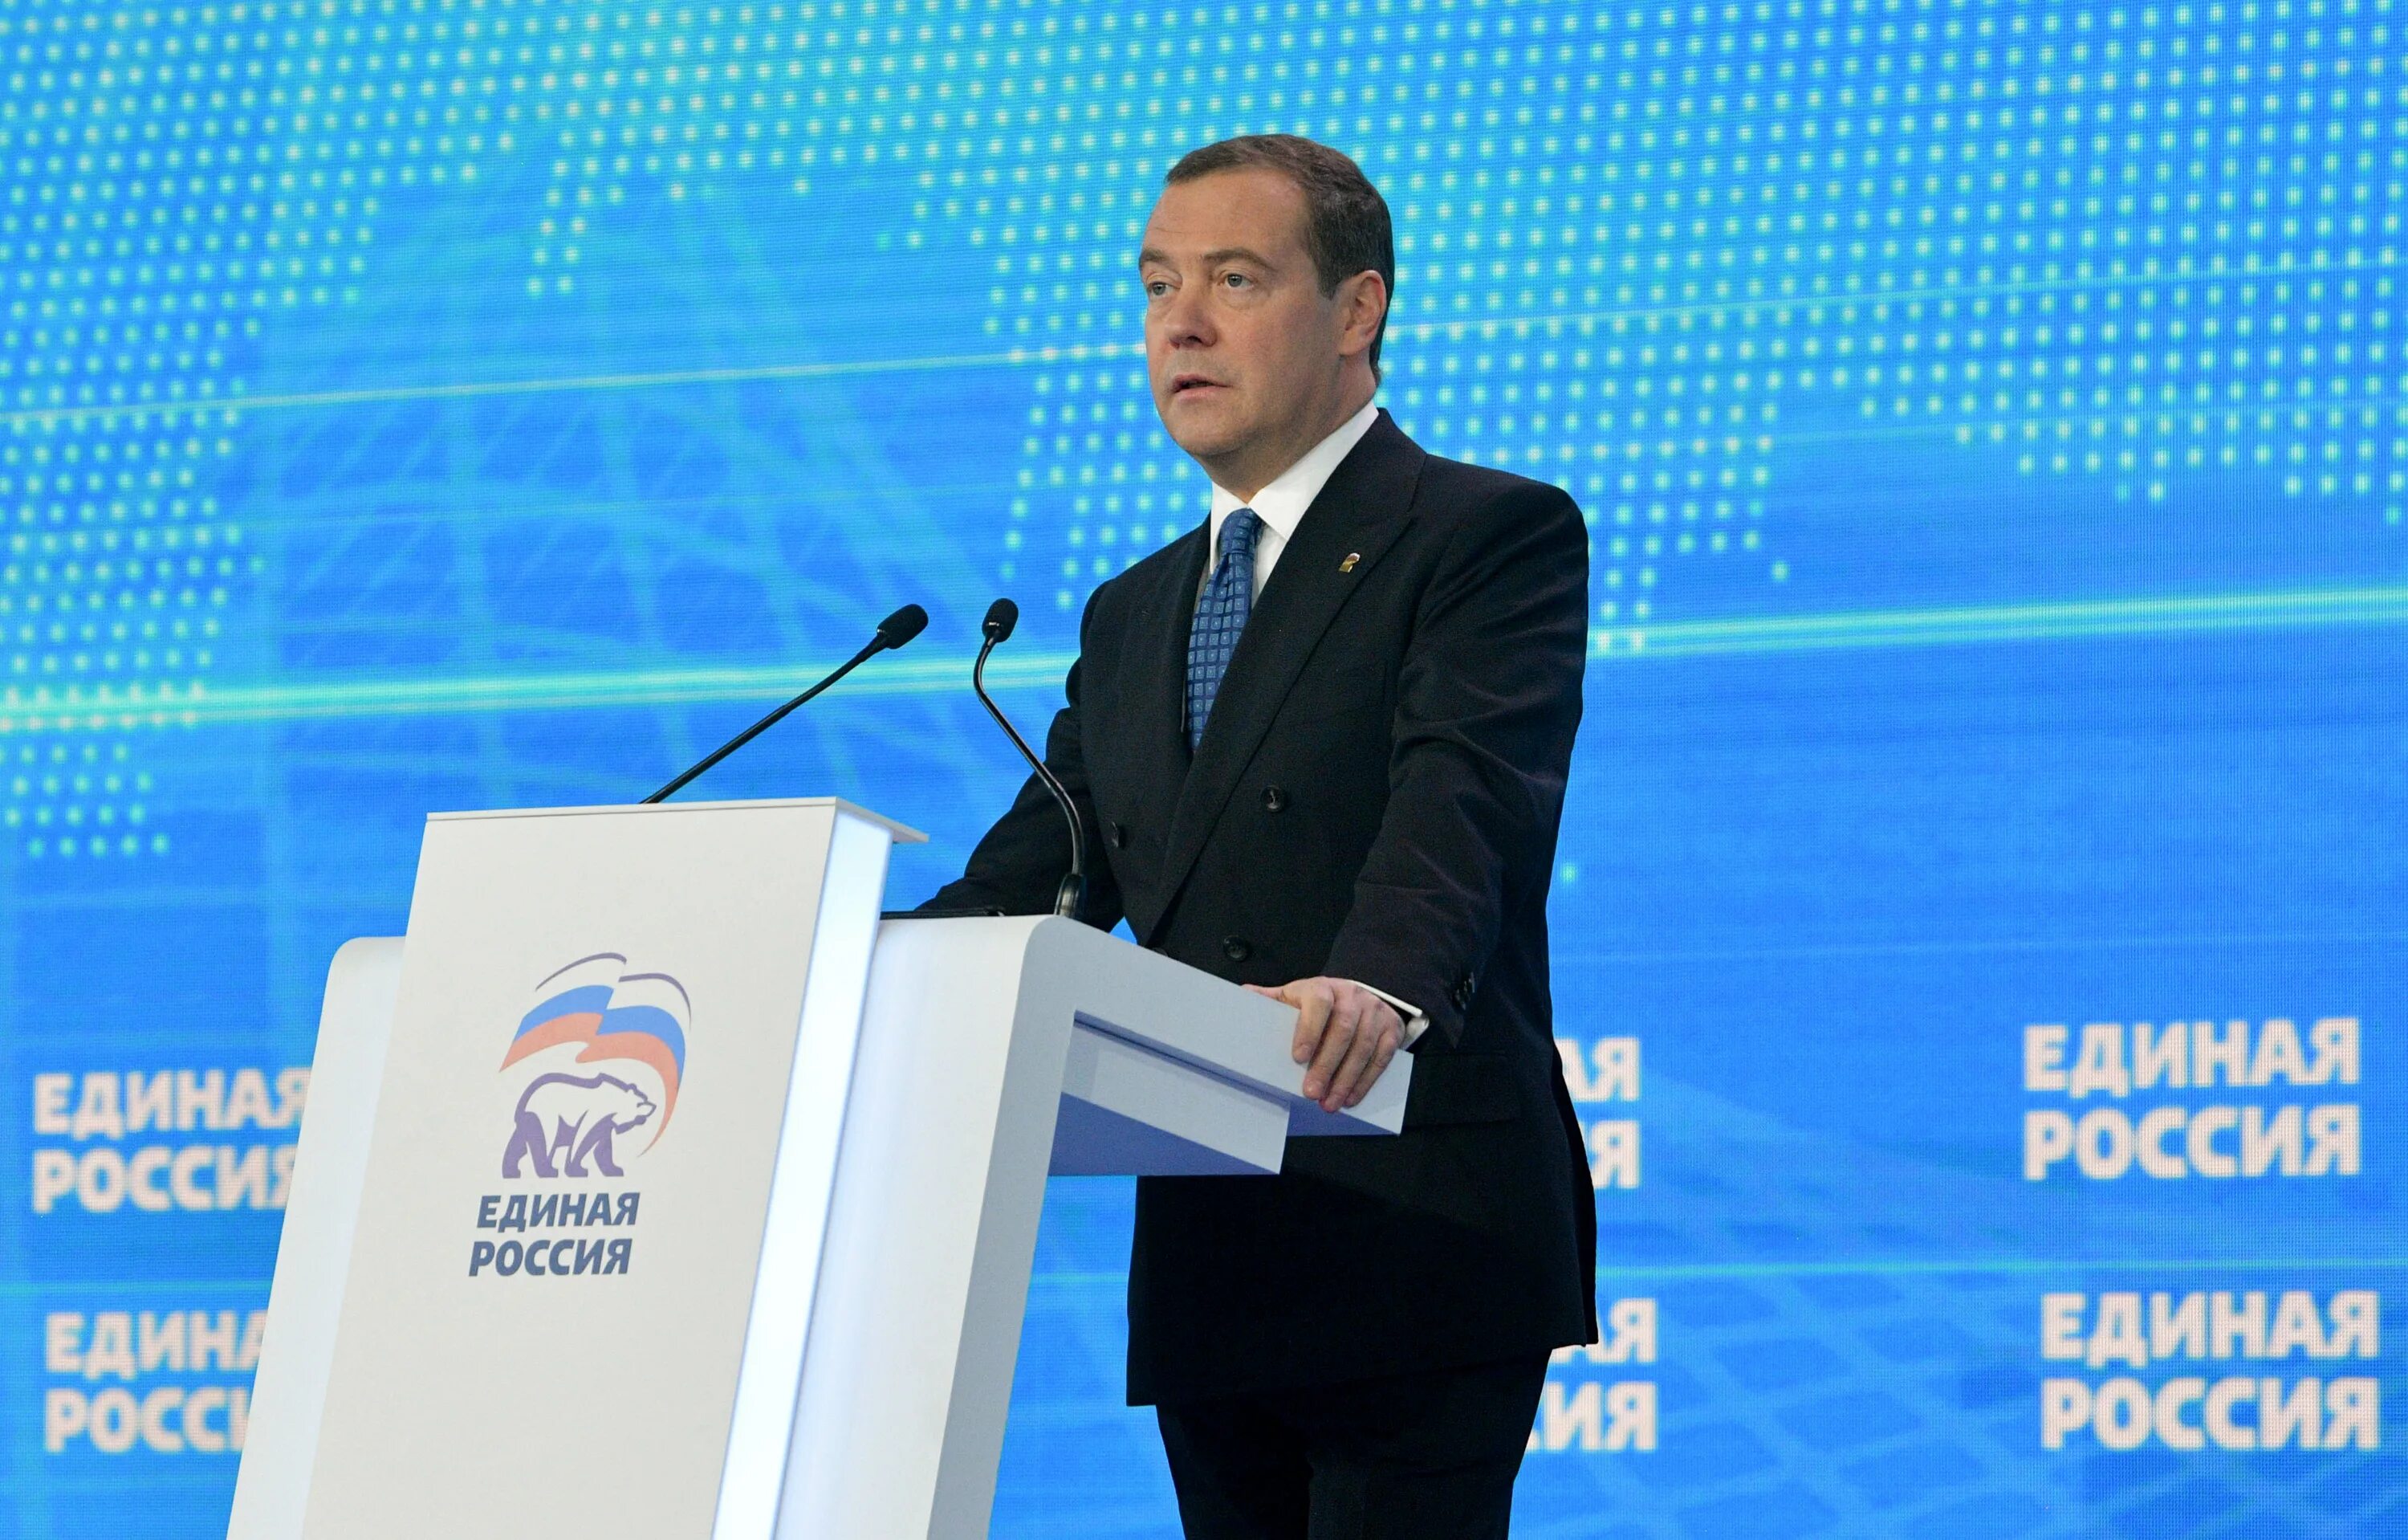 Д а медведев единая россия. Медведев на съезде Единой России 2021. Лидеры партий Медведев.